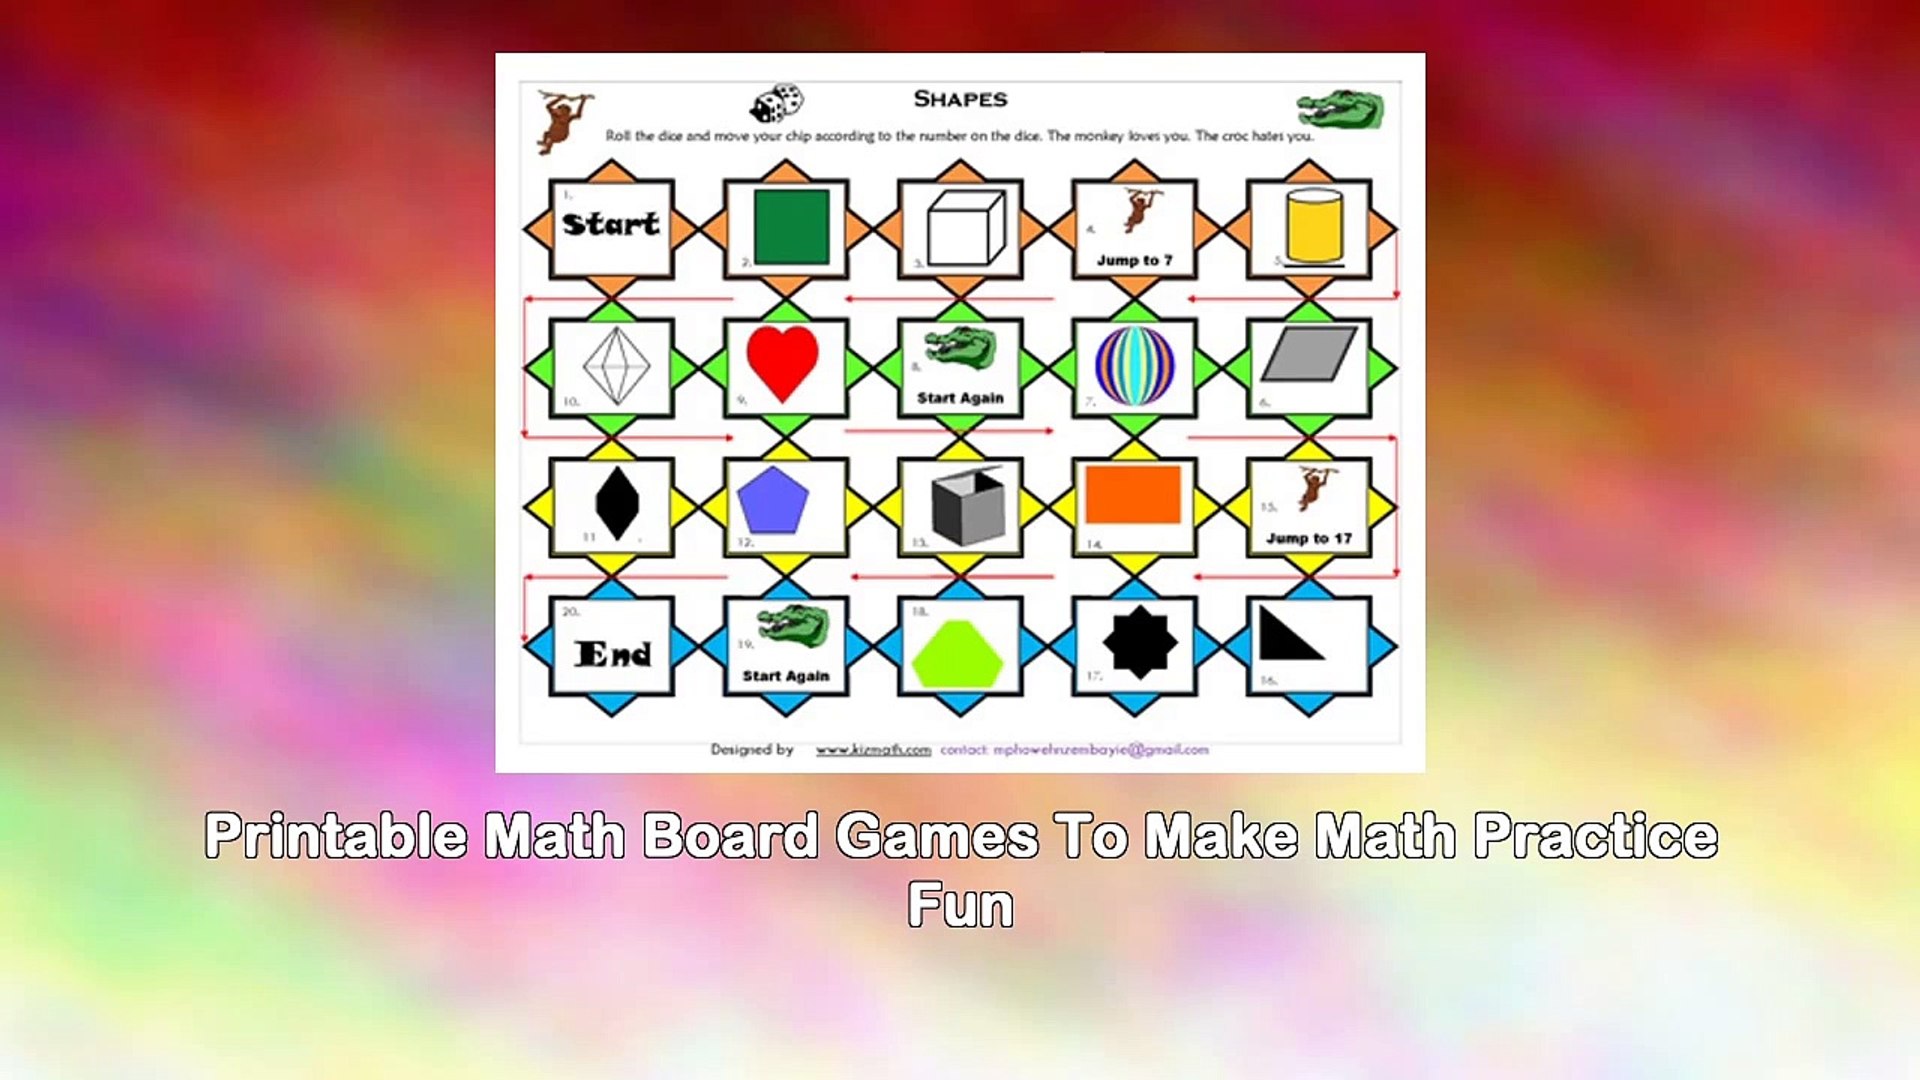 The Math Board Games Book - Printable Math Games